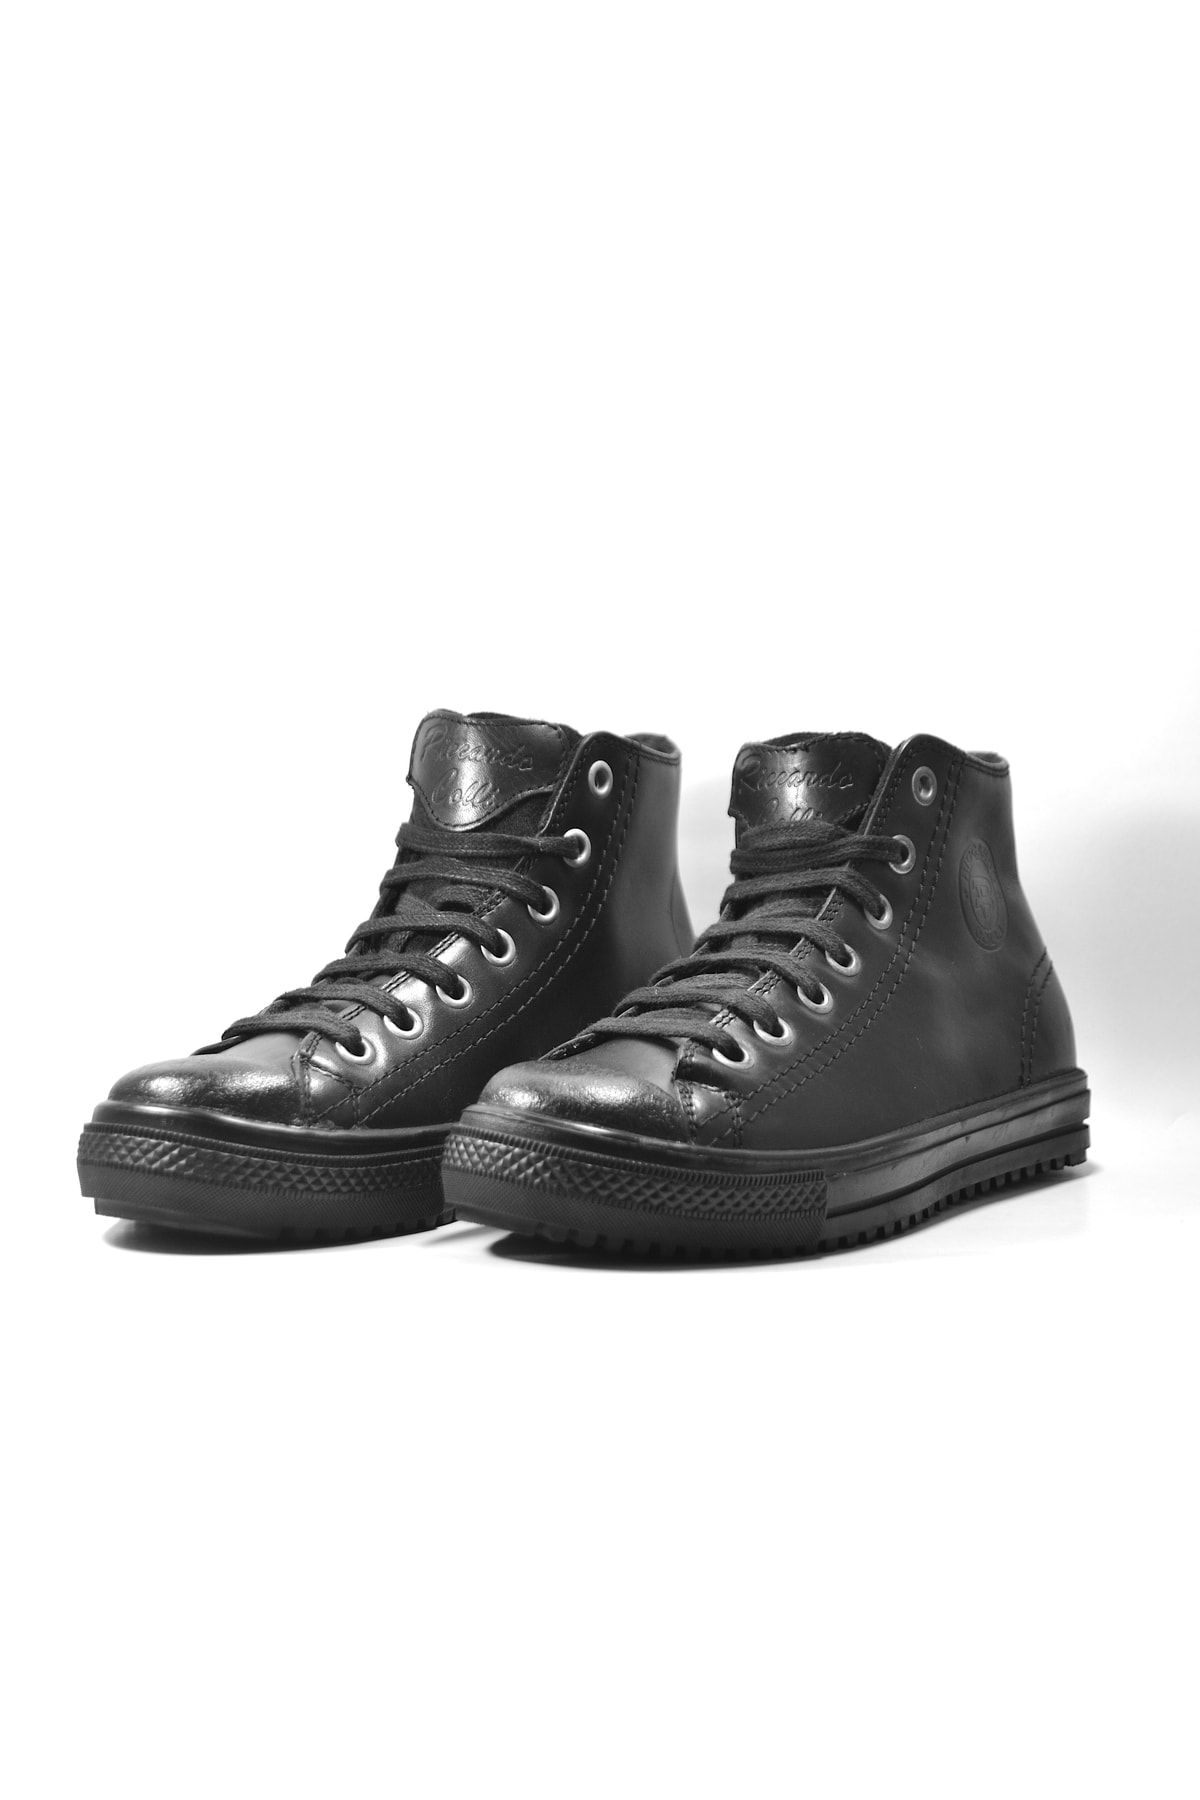 Riccardo Colli 3106 Hakiki Deri Siyah Bilekli Bağlı Genç Erkek Çocuk Sneakers Ayakkabı